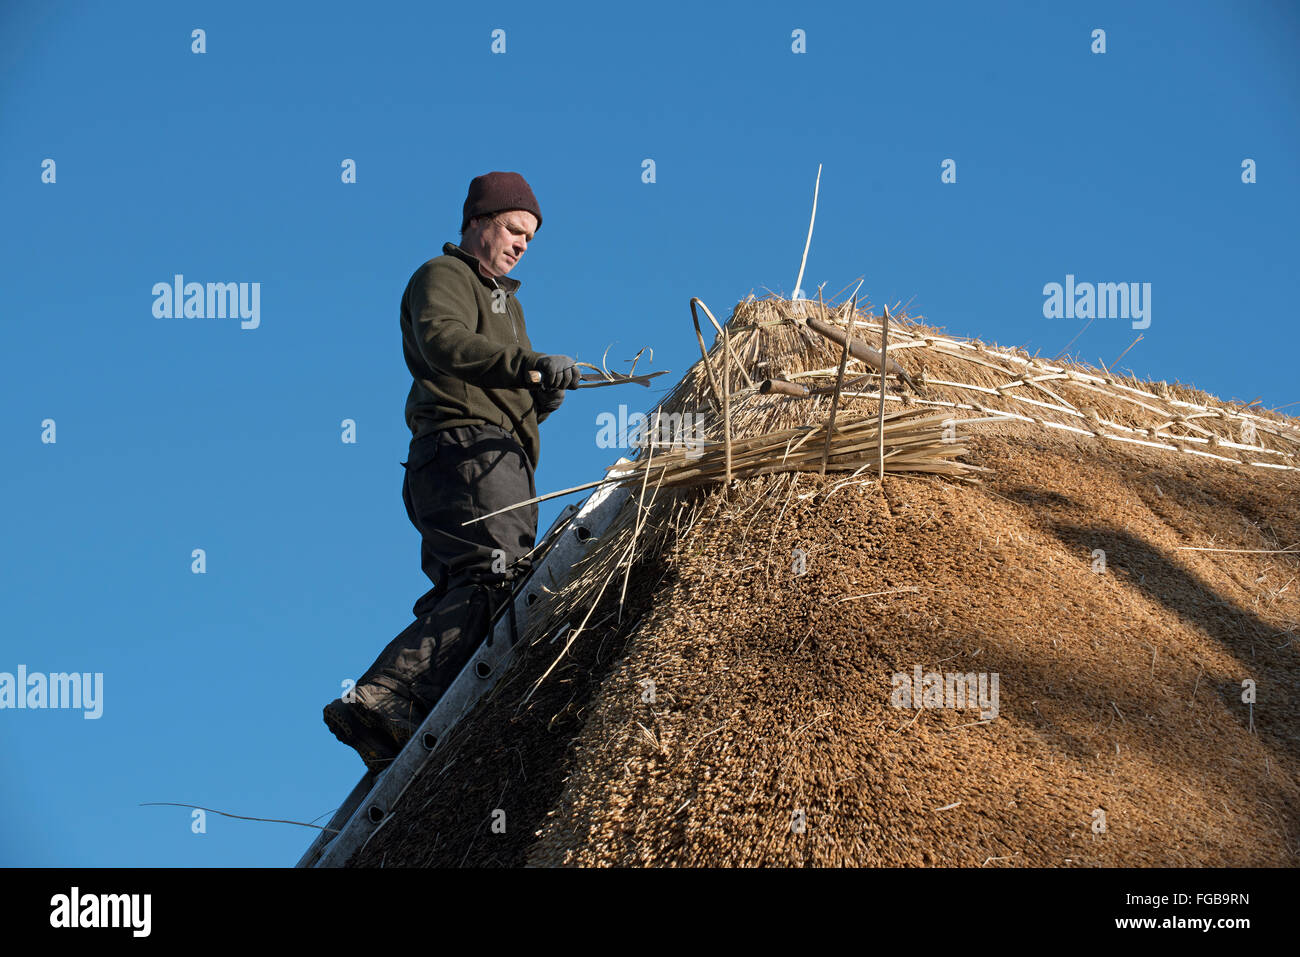 La Thatcher lavorando sul crinale di un tetto di paglia con Hazel Wood longheroni Foto Stock